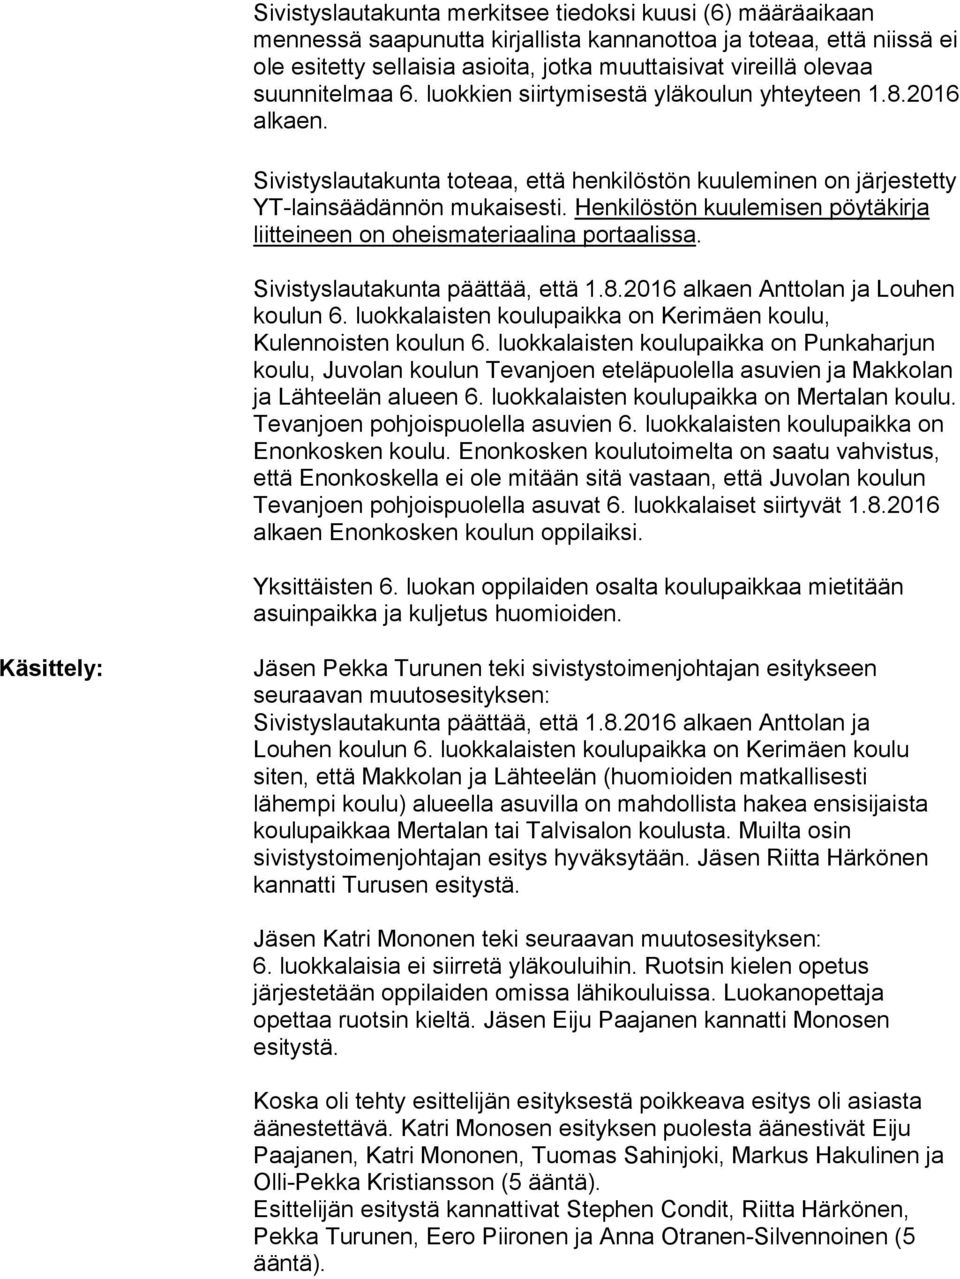 Henkilöstön kuulemisen pöytäkirja liitteineen on oheismateriaalina portaalissa. Sivistyslautakunta päättää, että 1.8.2016 alkaen Anttolan ja Louhen koulun 6.